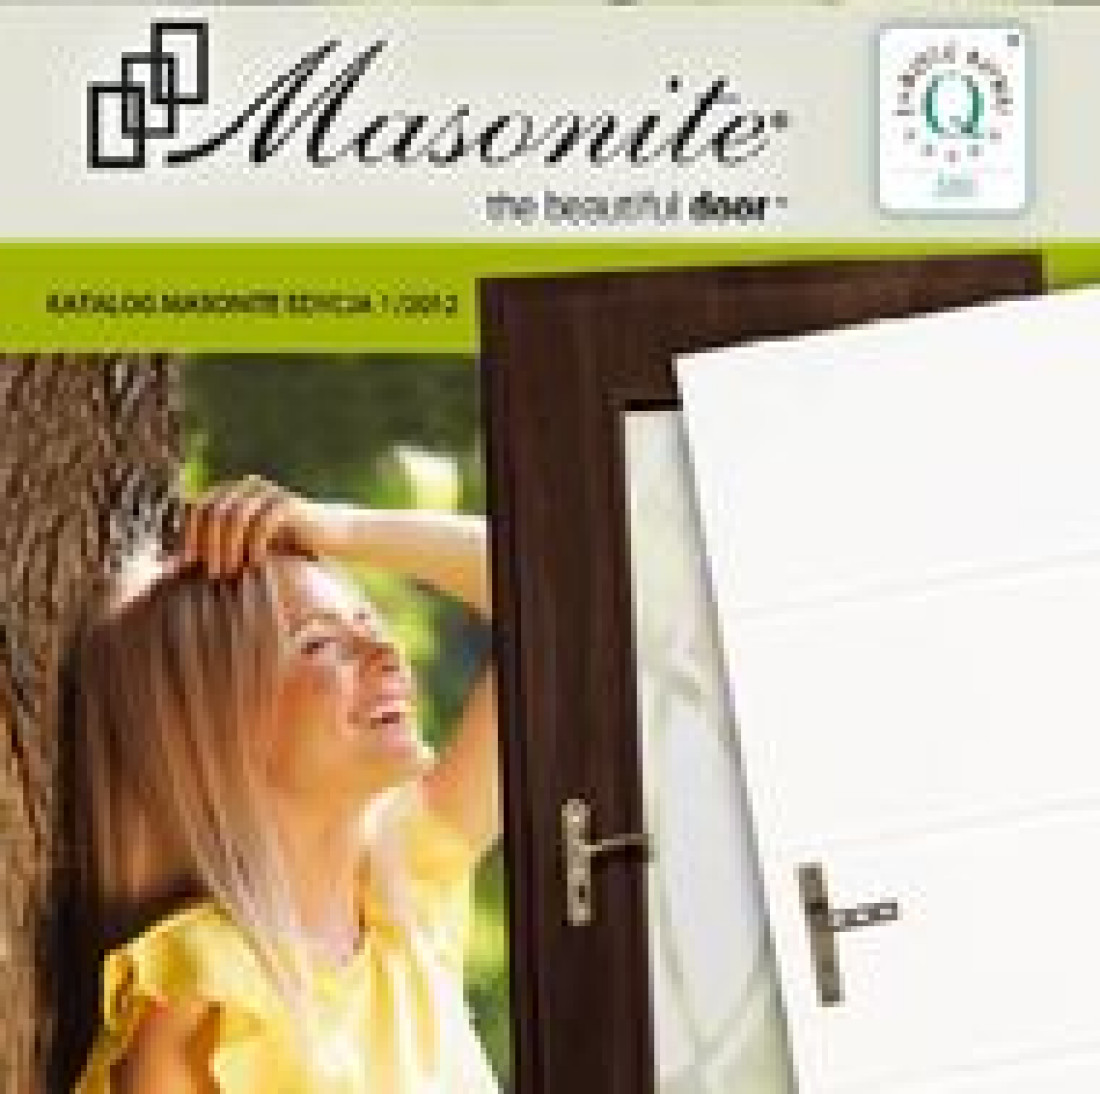 Masonite otwiera kolejne drzwi - witamy w nowym dziale!